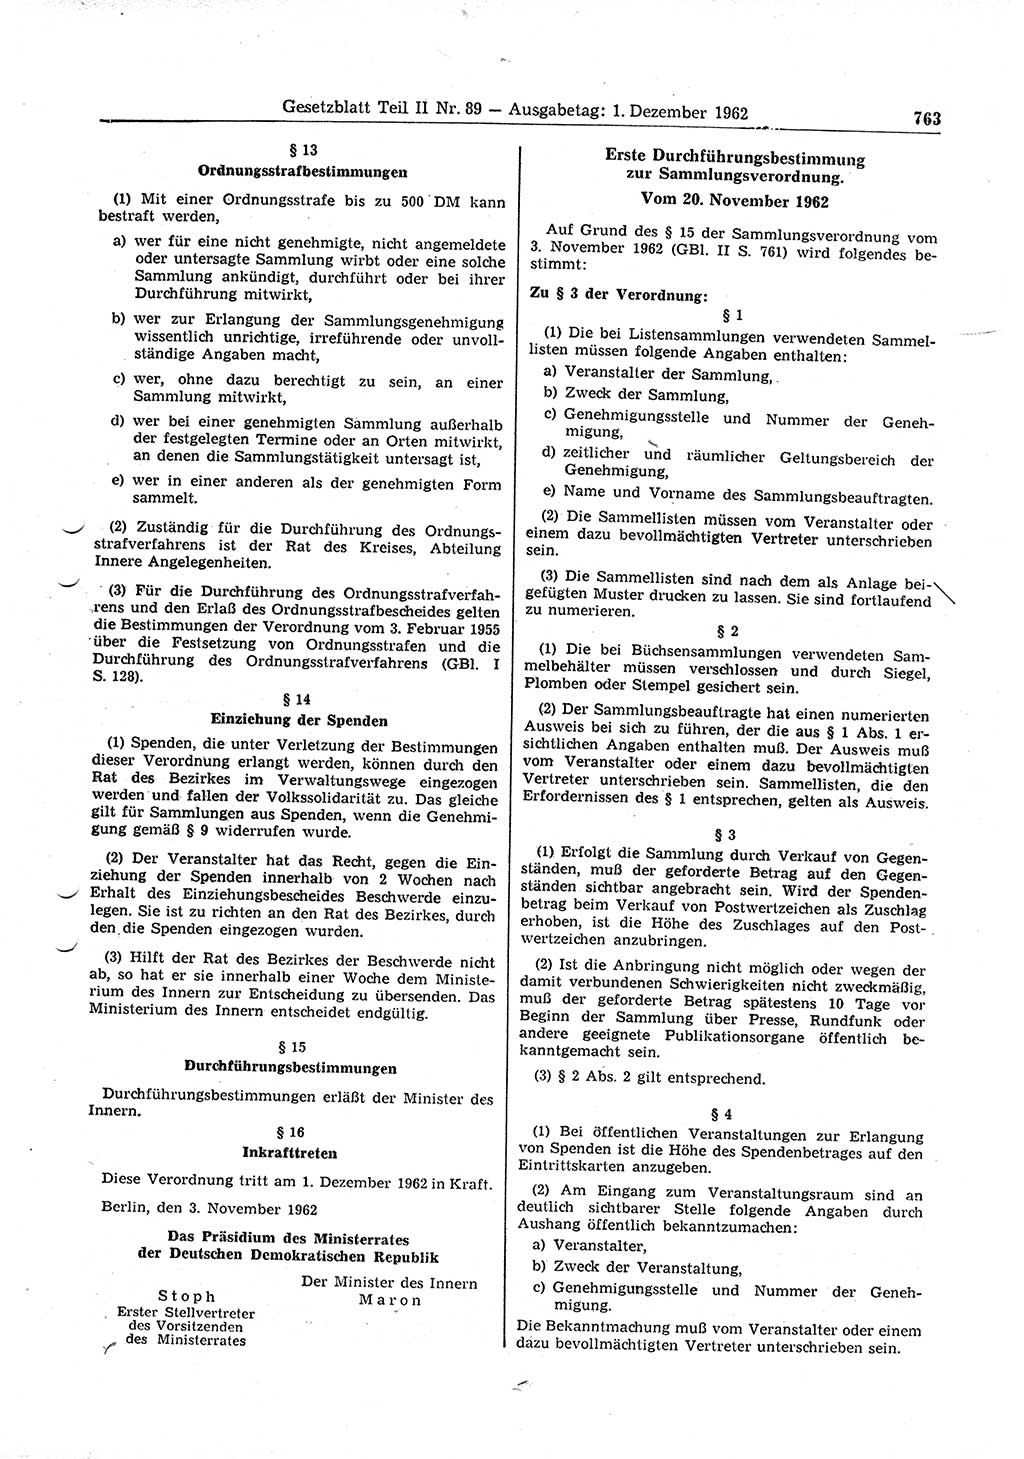 Gesetzblatt (GBl.) der Deutschen Demokratischen Republik (DDR) Teil ⅠⅠ 1962, Seite 763 (GBl. DDR ⅠⅠ 1962, S. 763)